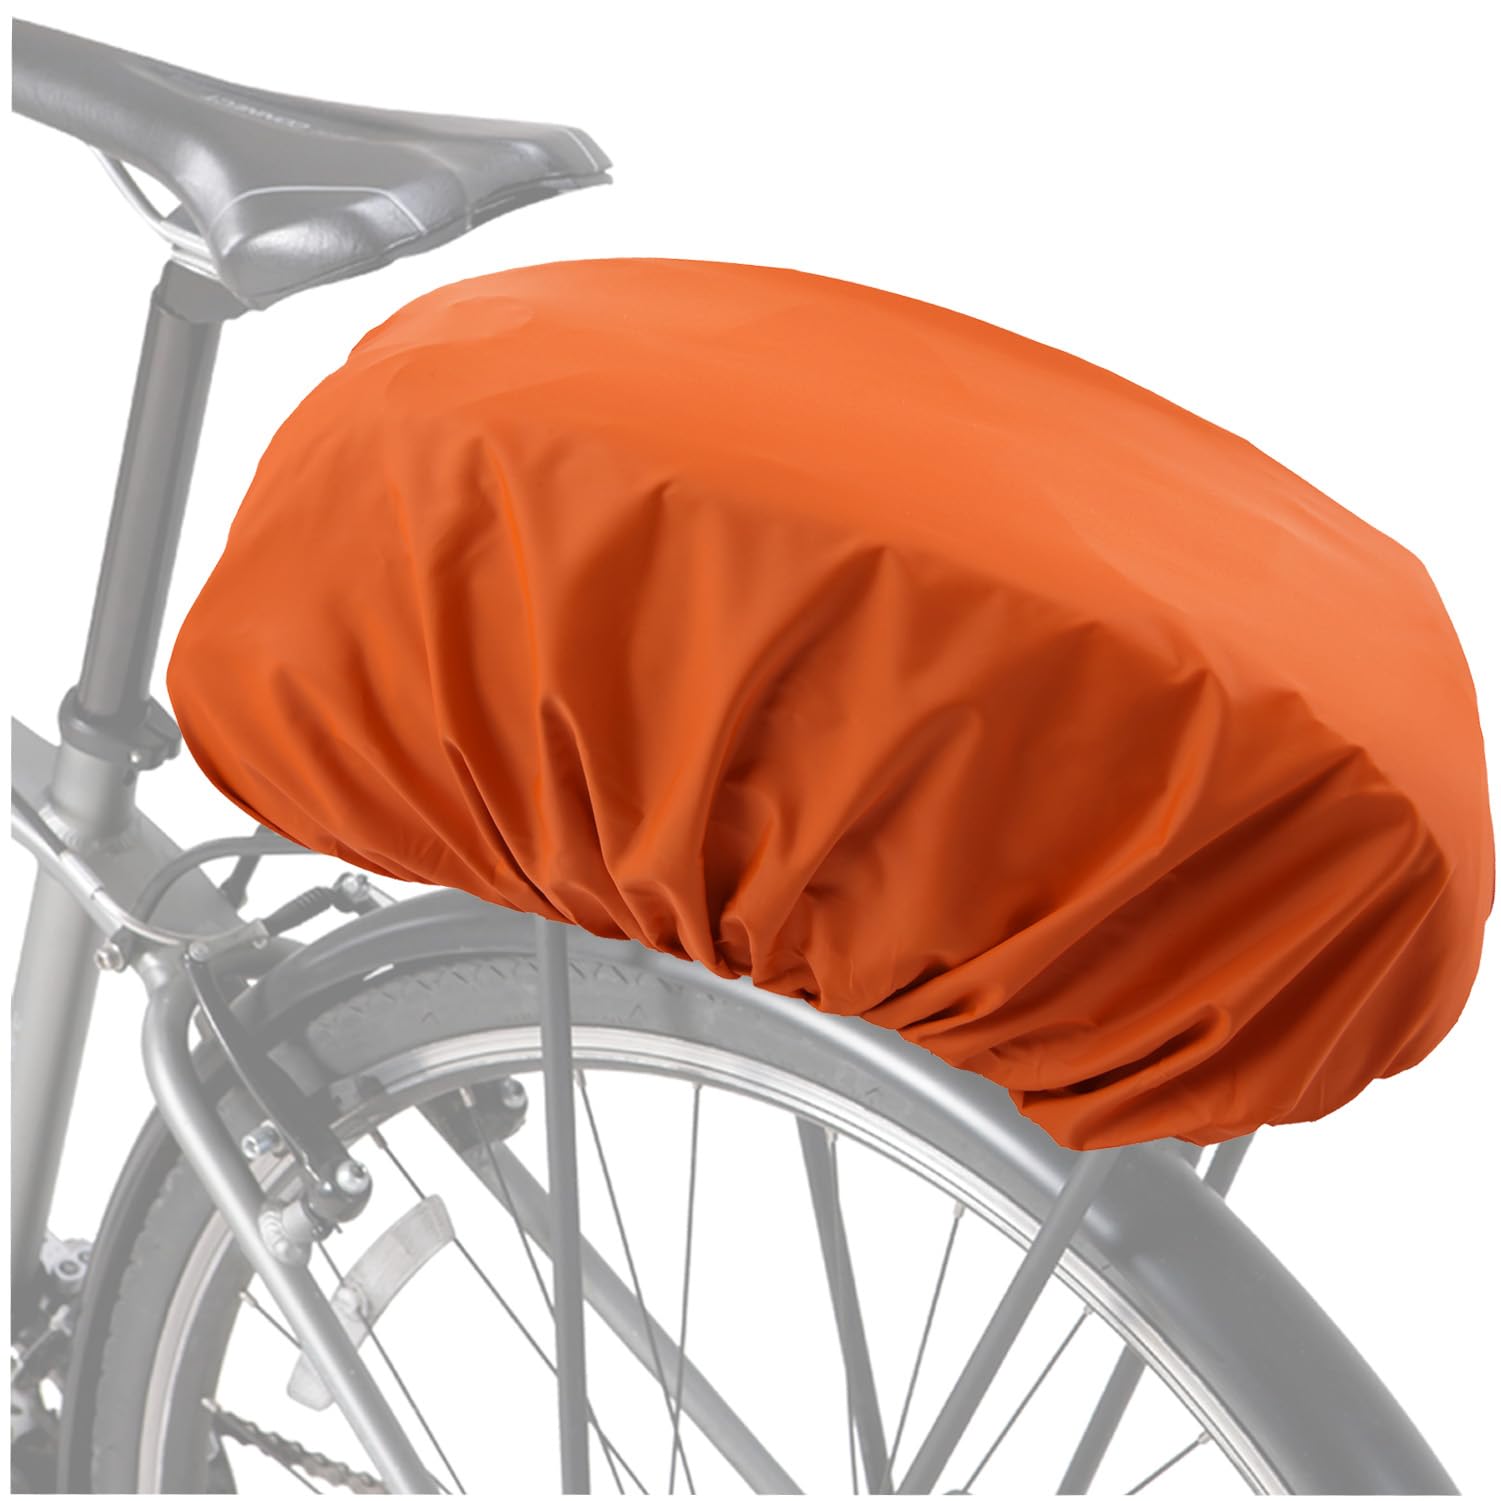 VAOLOAV 5L to 20L Regenschutz für Fahrradkorb Regenschutz Orange Fahrradkorb Regenschutz Abdeckung Überzug für Fahrradkorb Wasserabweisend Farradtasche Bikebasket Regenhaube Orange von VAOLOAV